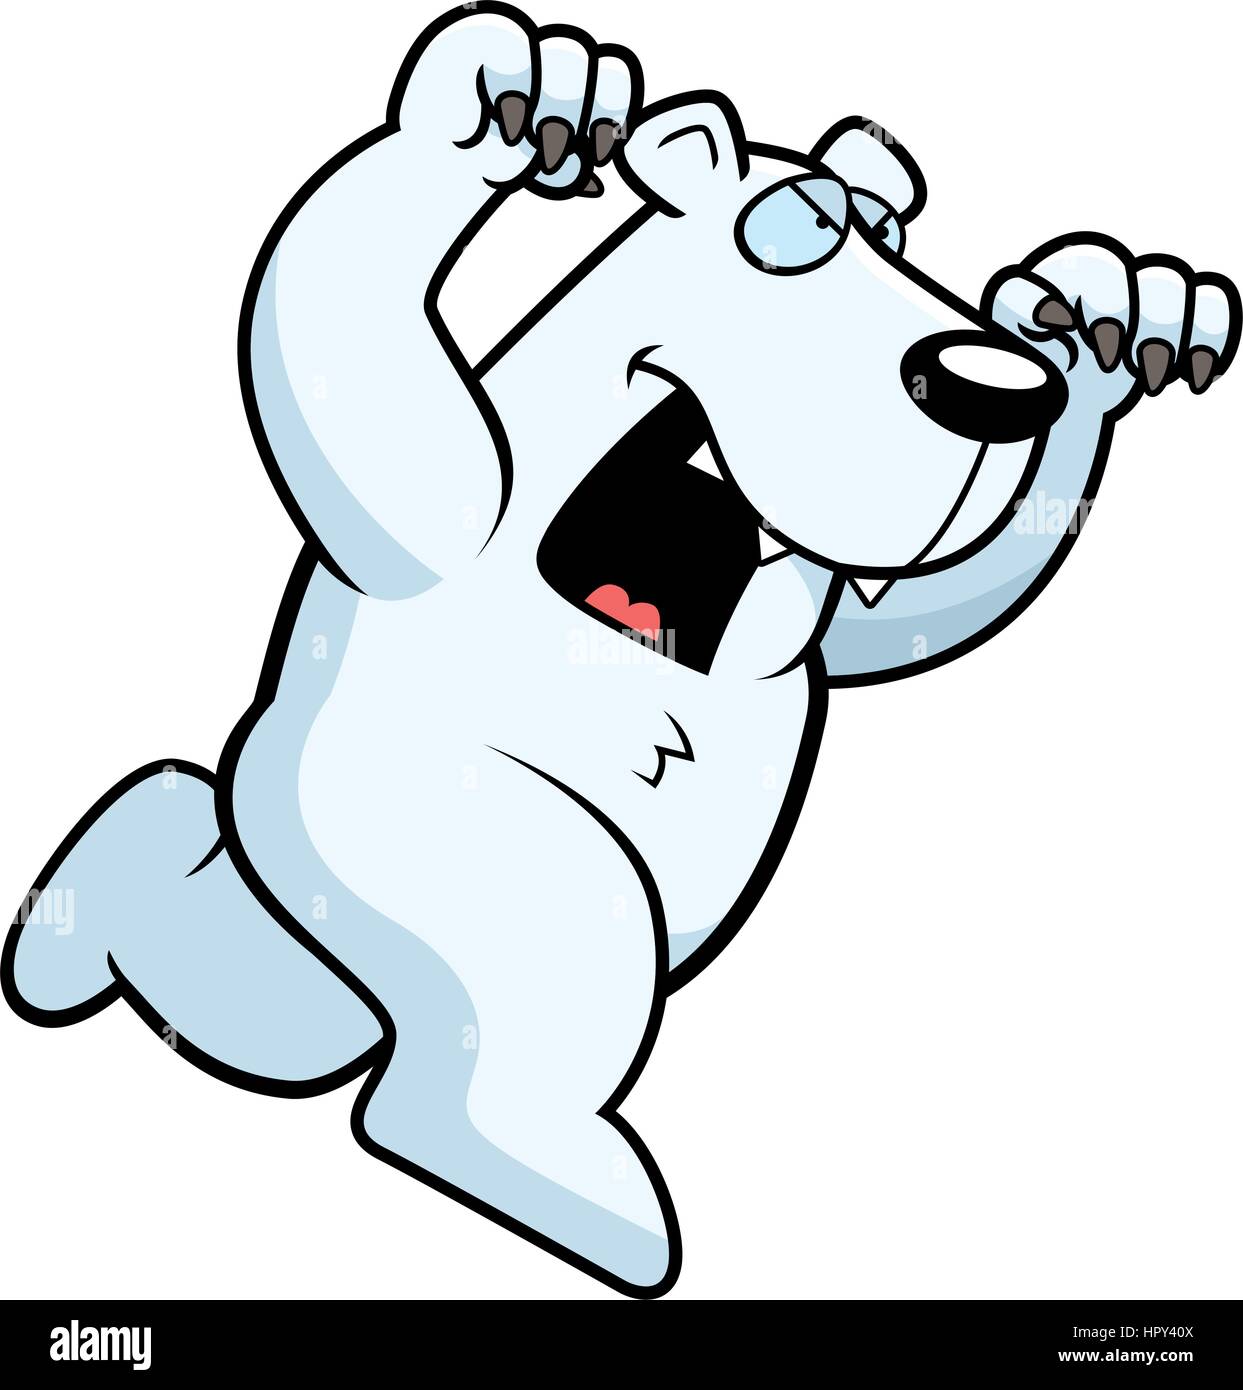 Ein Cartoon Eisbär laufen mit Krallen aus anzugreifen. Stock Vektor